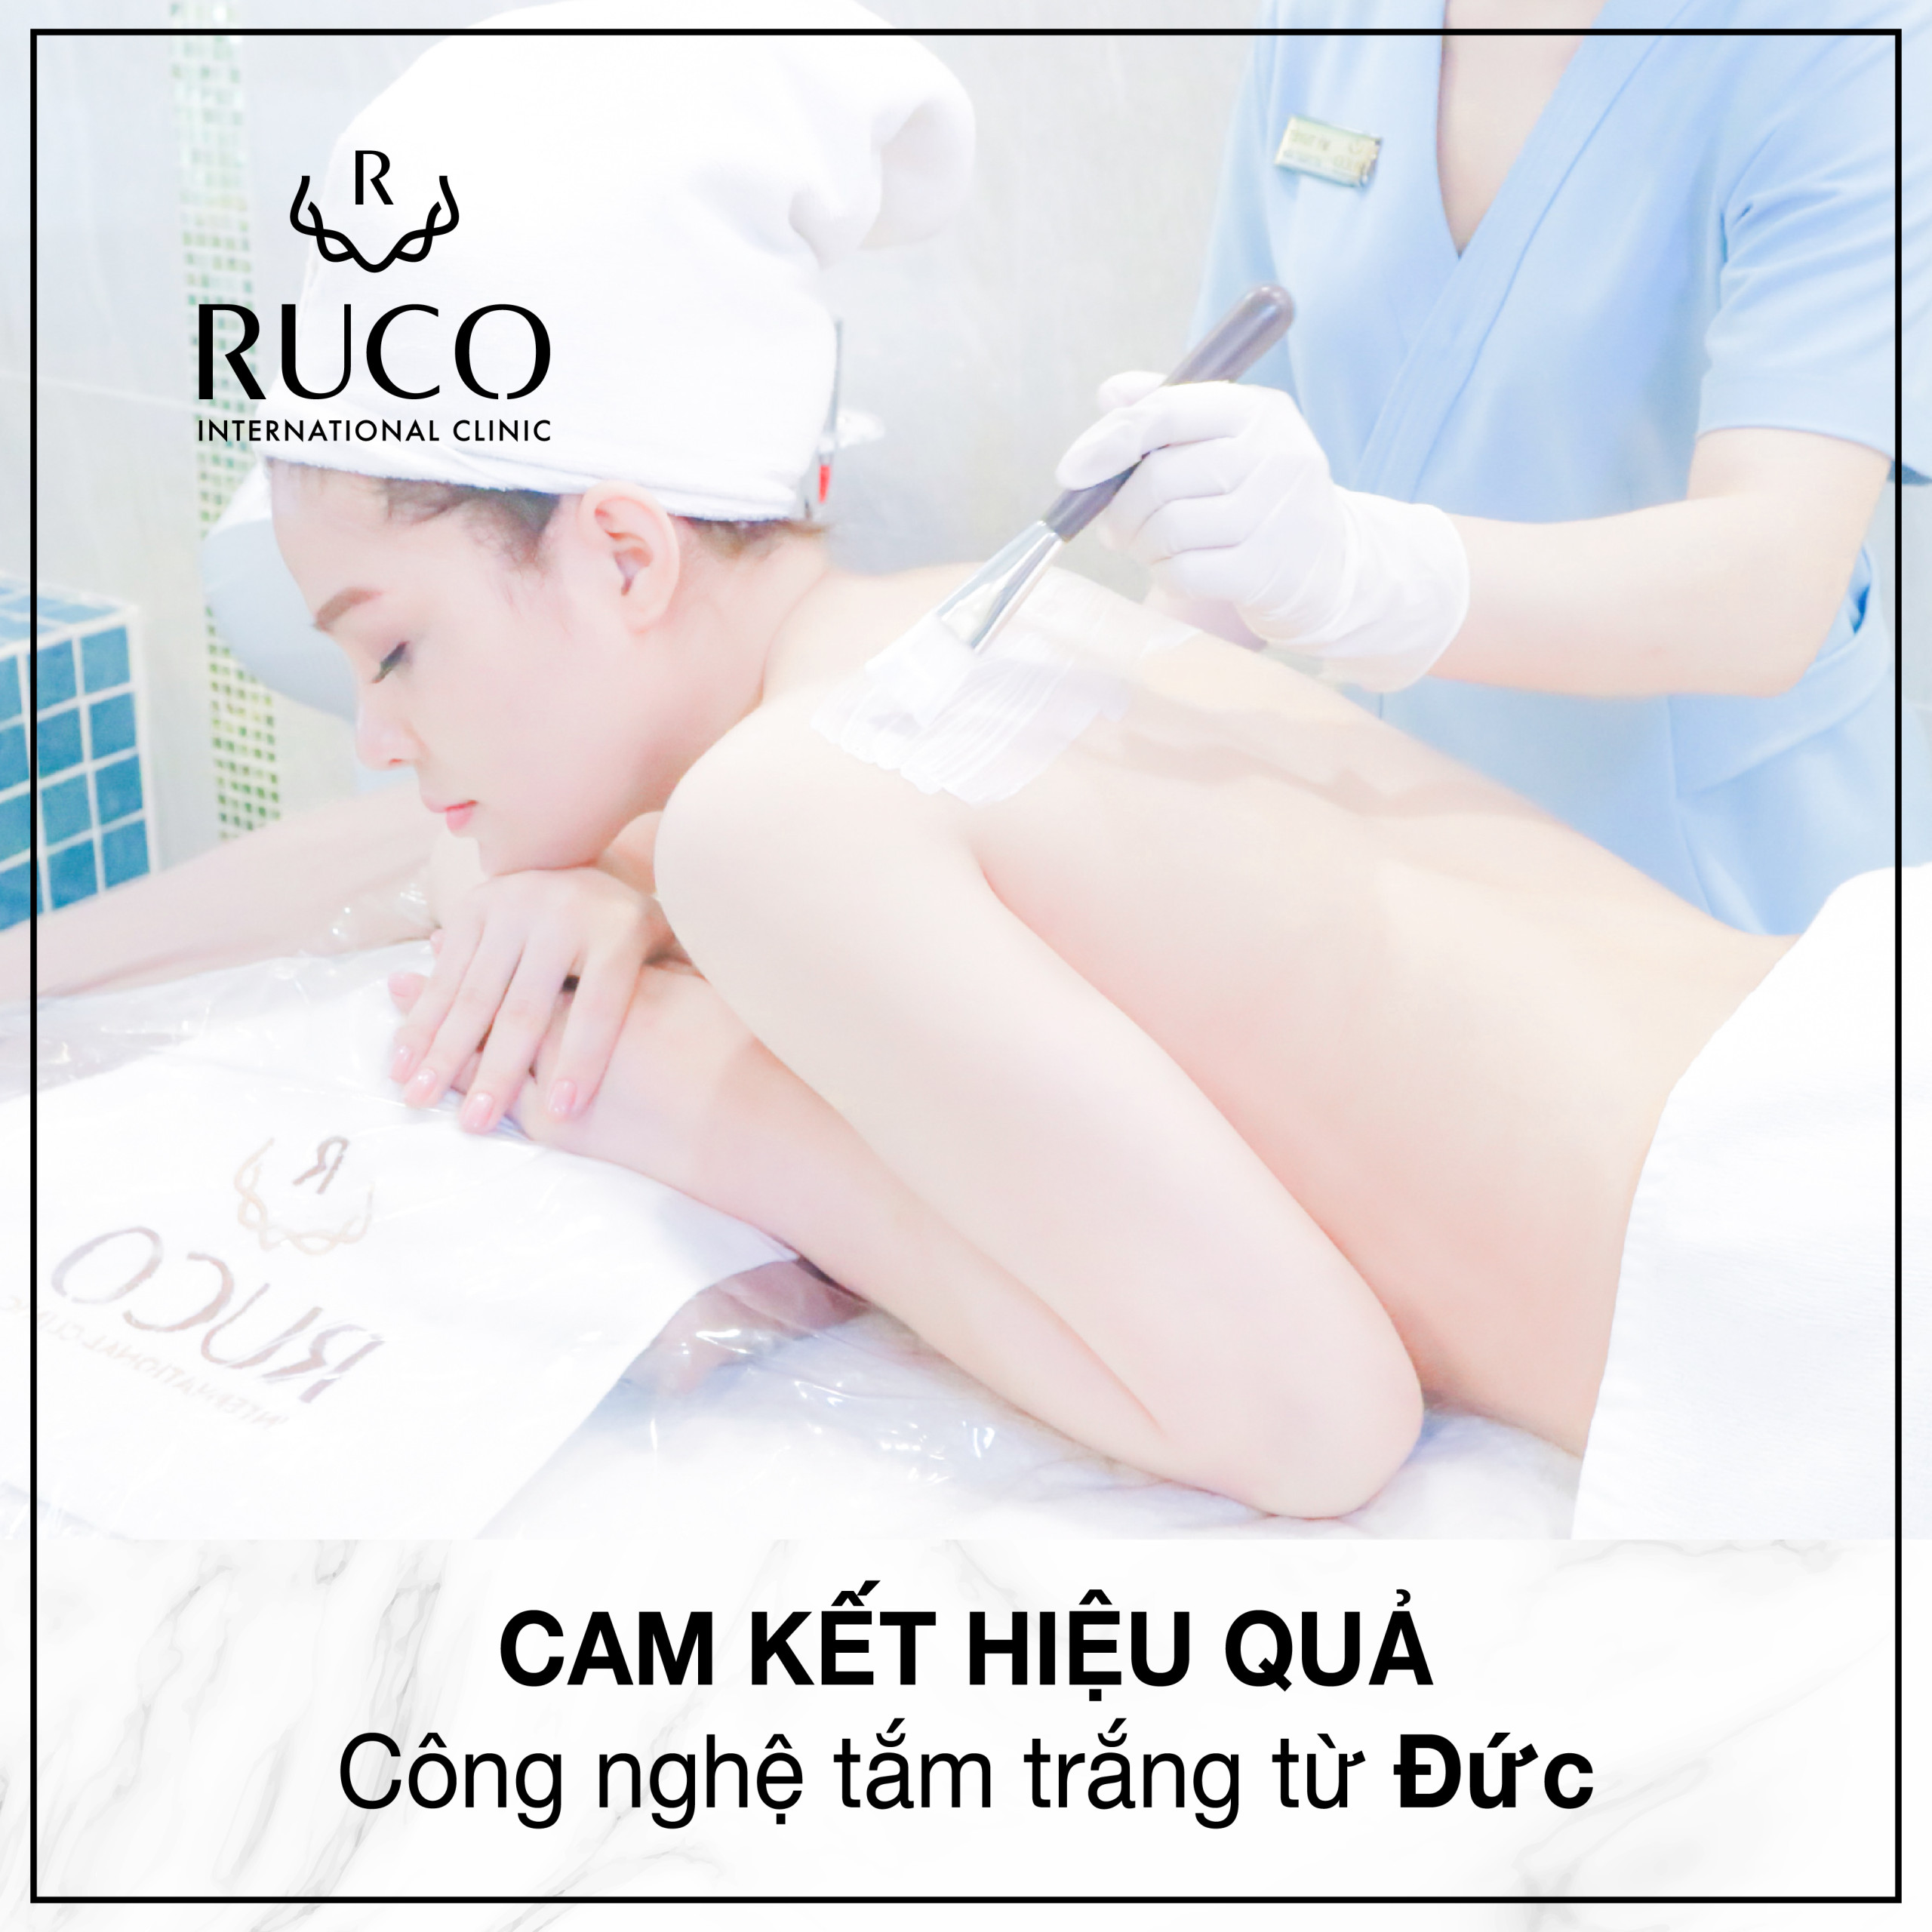 RUCO cam kết hiệu quả với công nghệ tắm trắng từ Đức